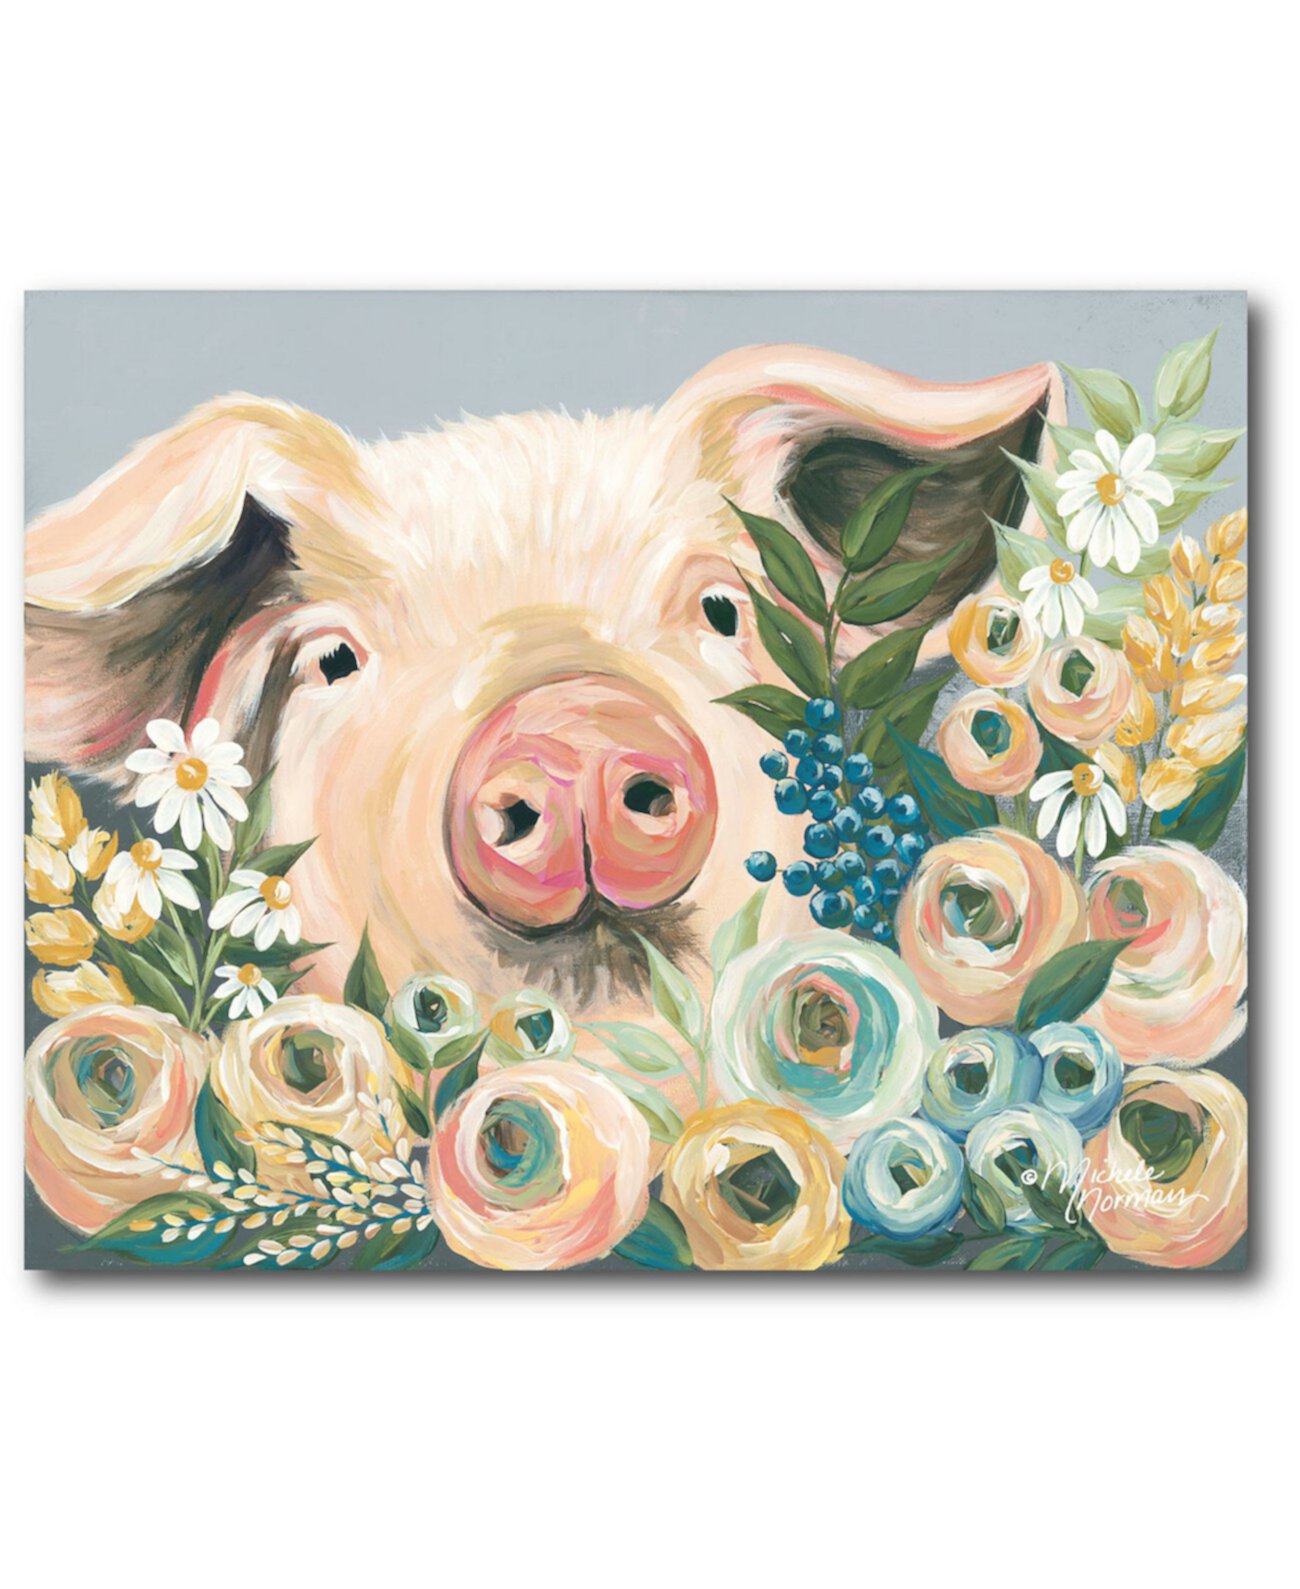 Свинка с цветами. Свинья в цветах. Свинья в подсолнухах. Свинья сицветком картины.